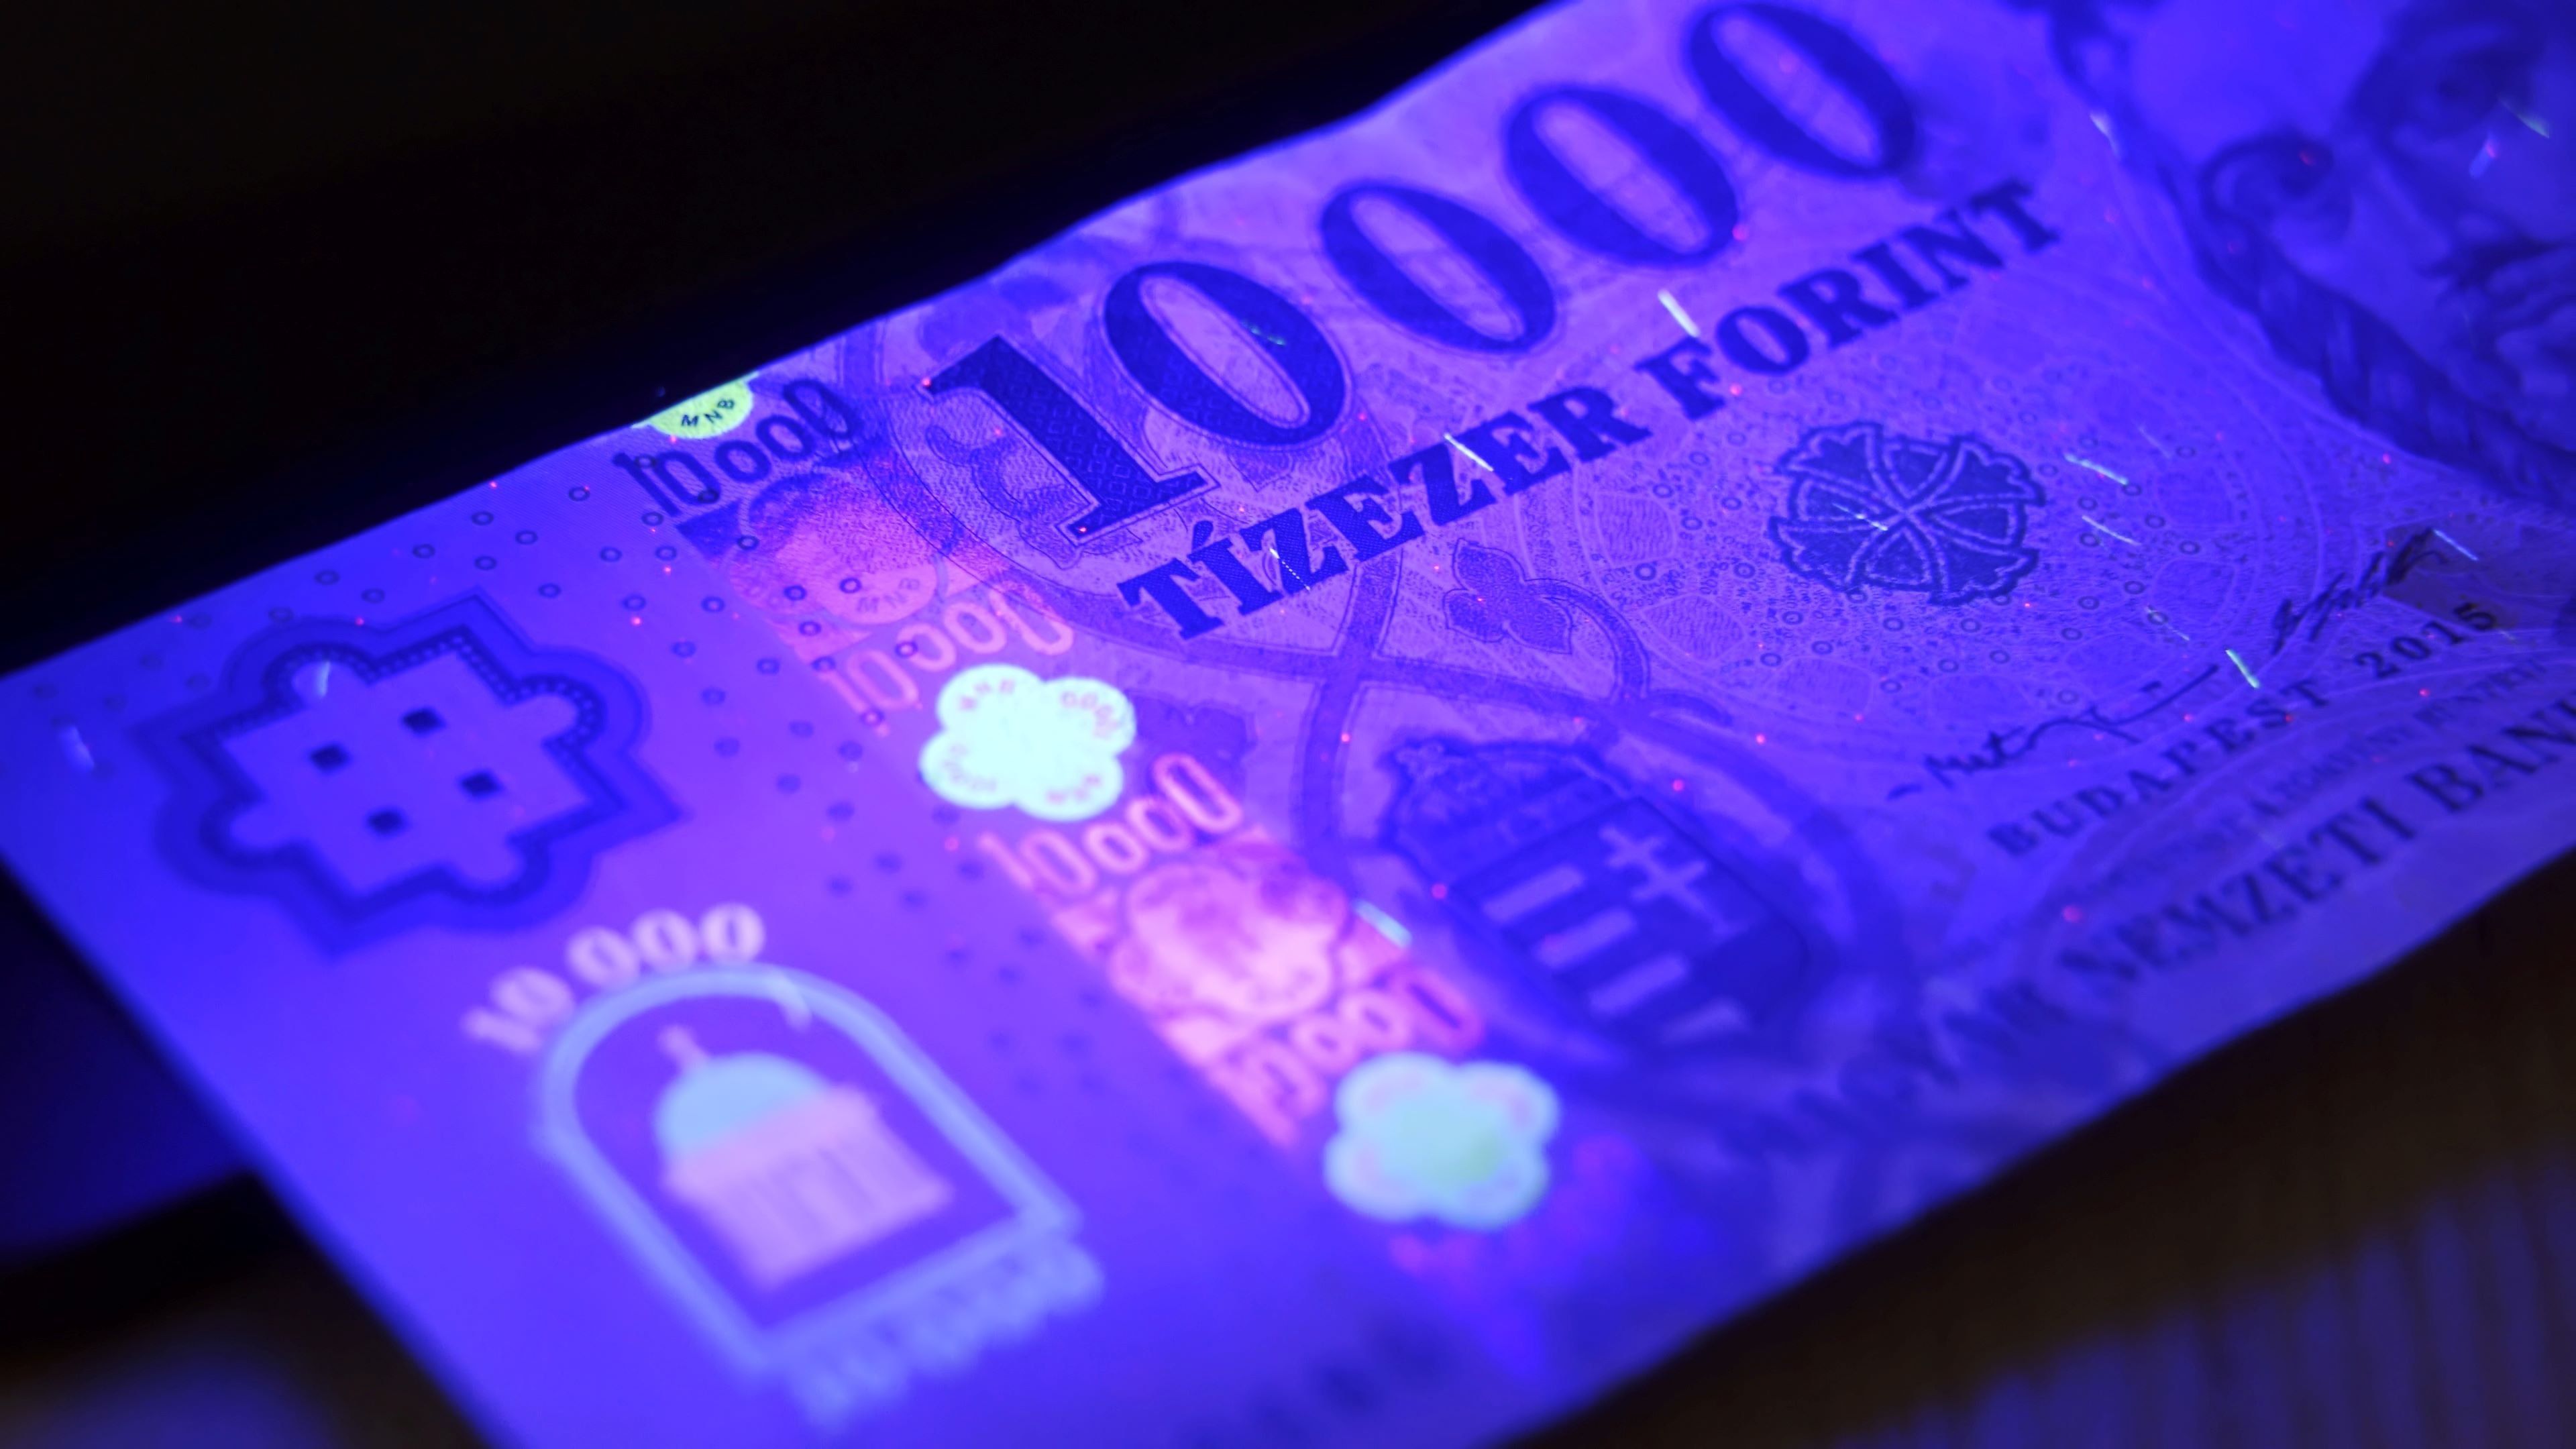 Kiderült, mennyi hamis pénz lehet forgalomban Magyarországon